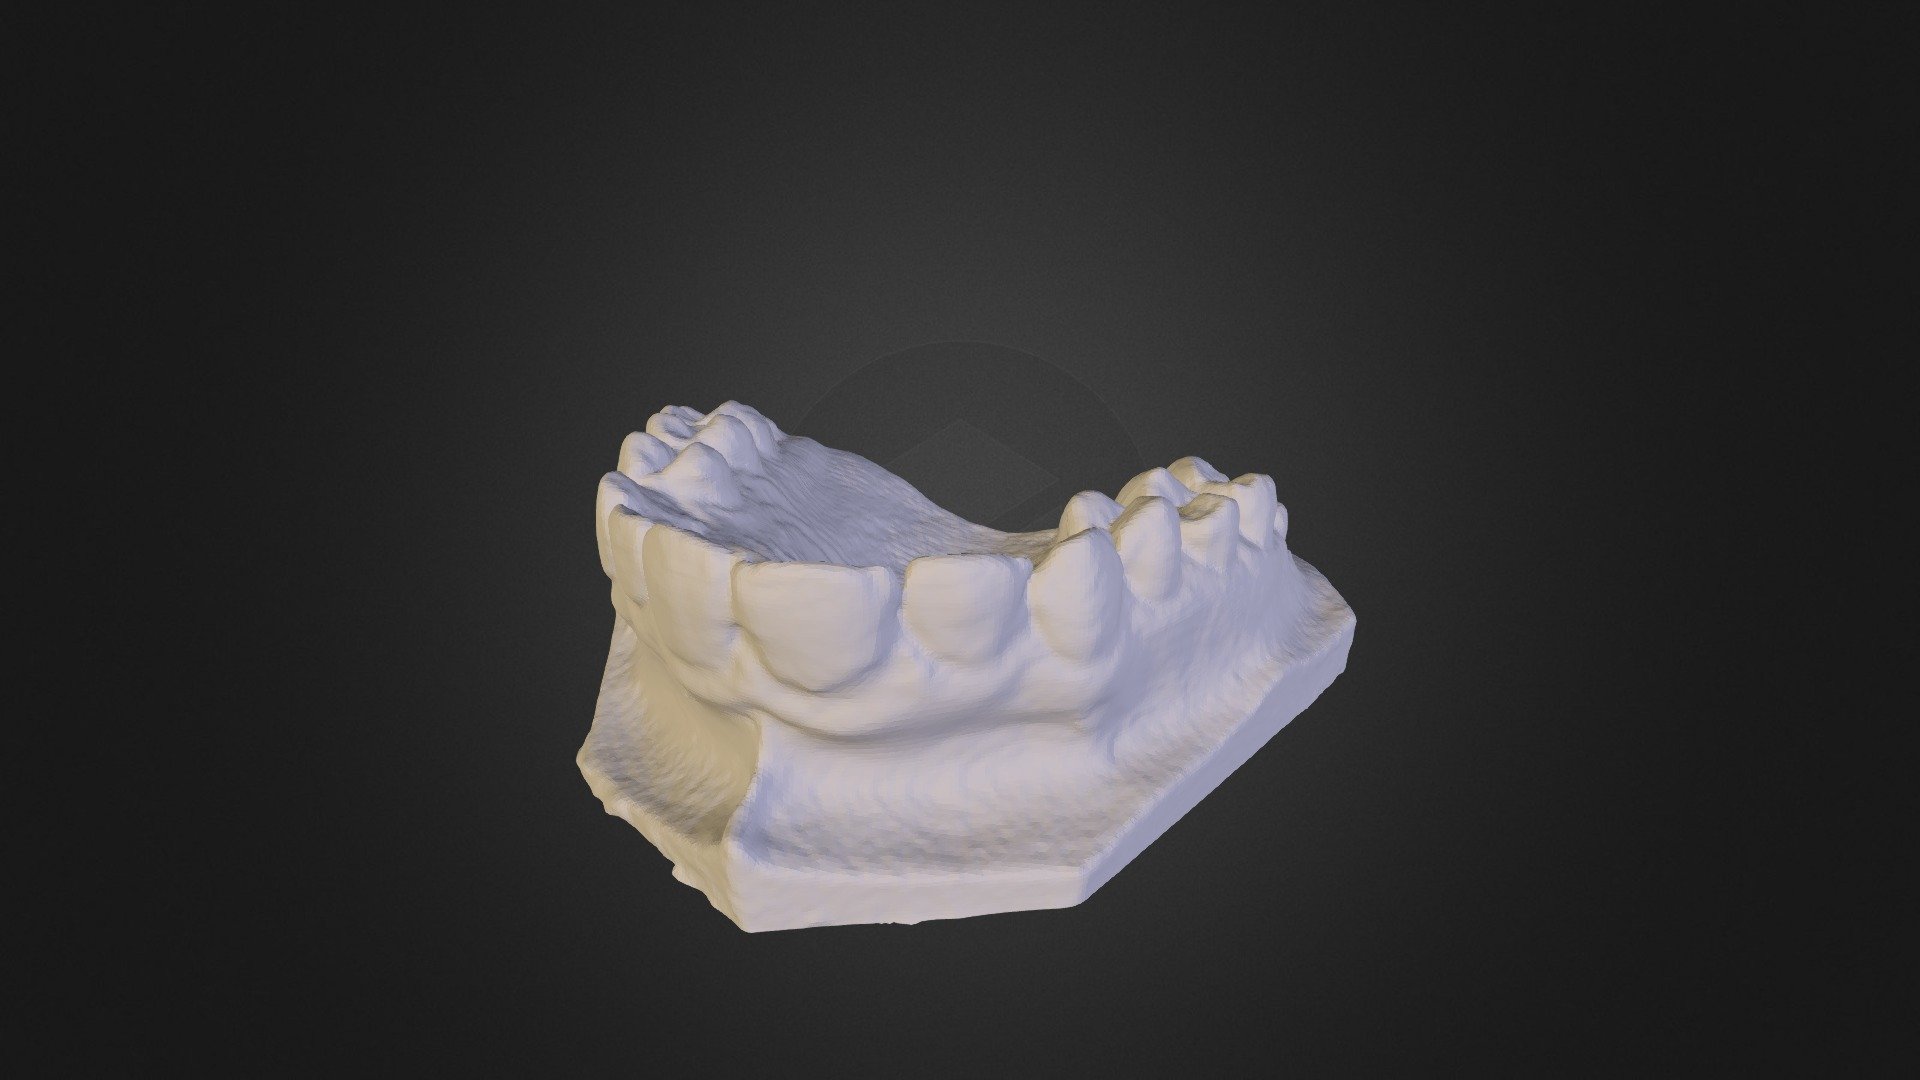 Teeth scan with Robocular Mini